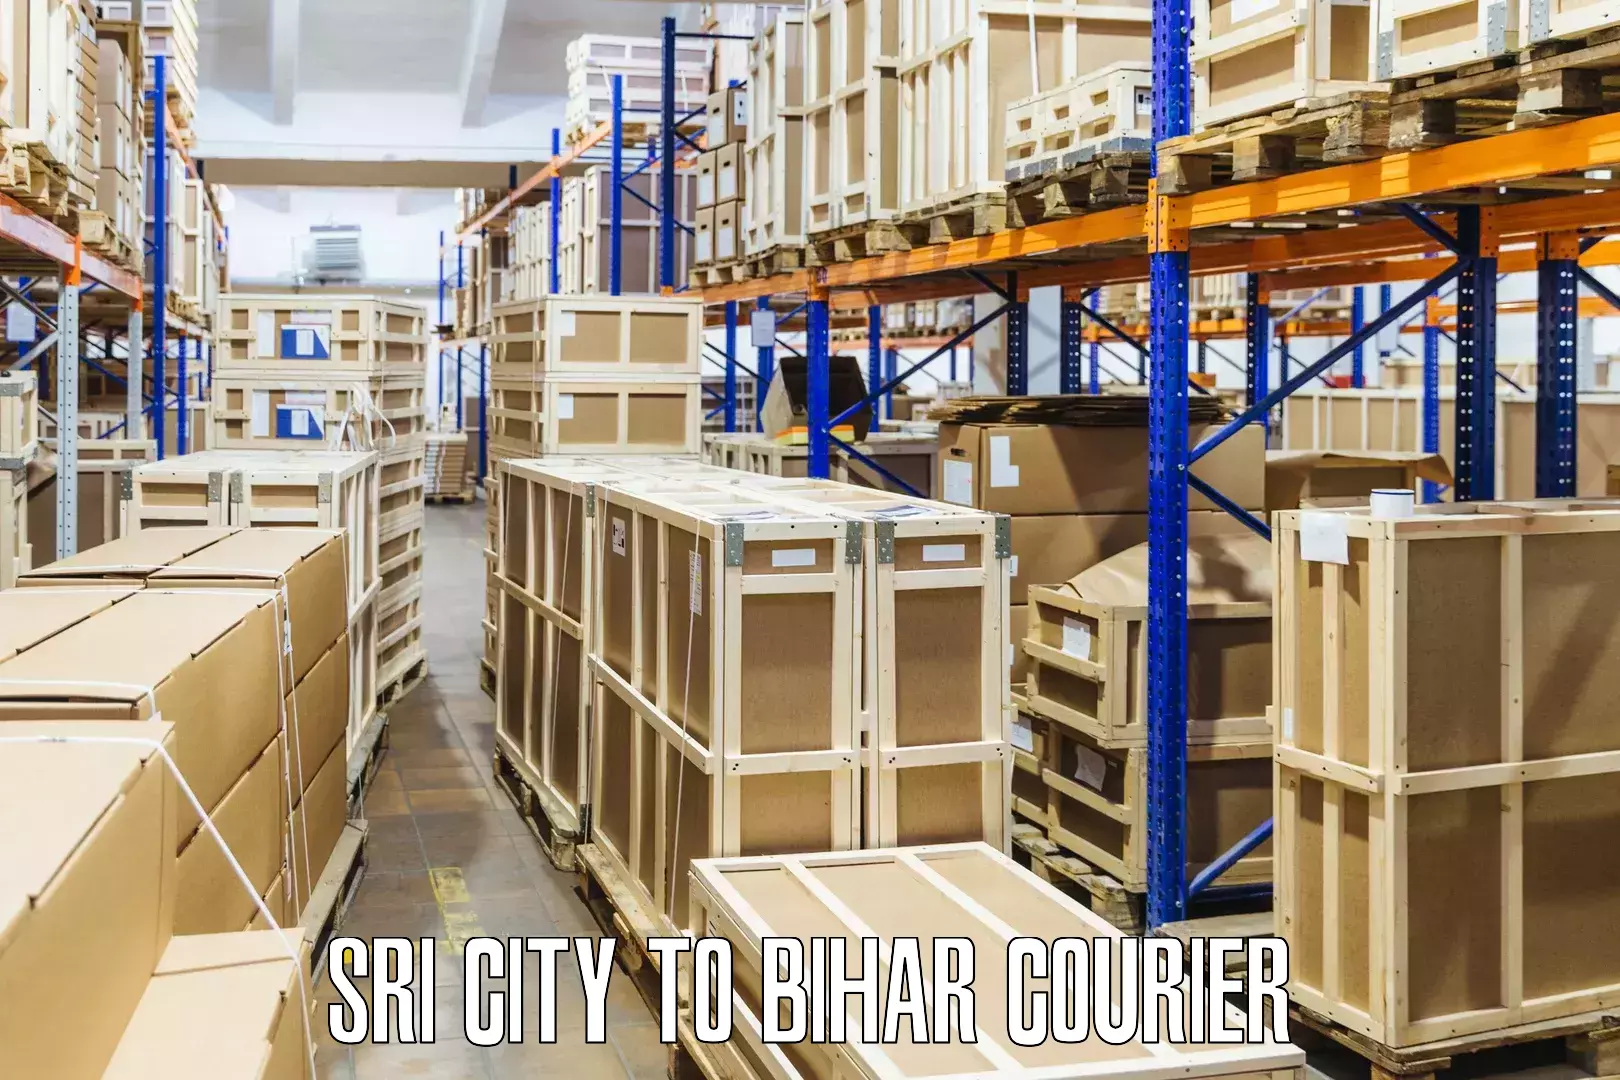 Fast delivery service Sri City to Biraul